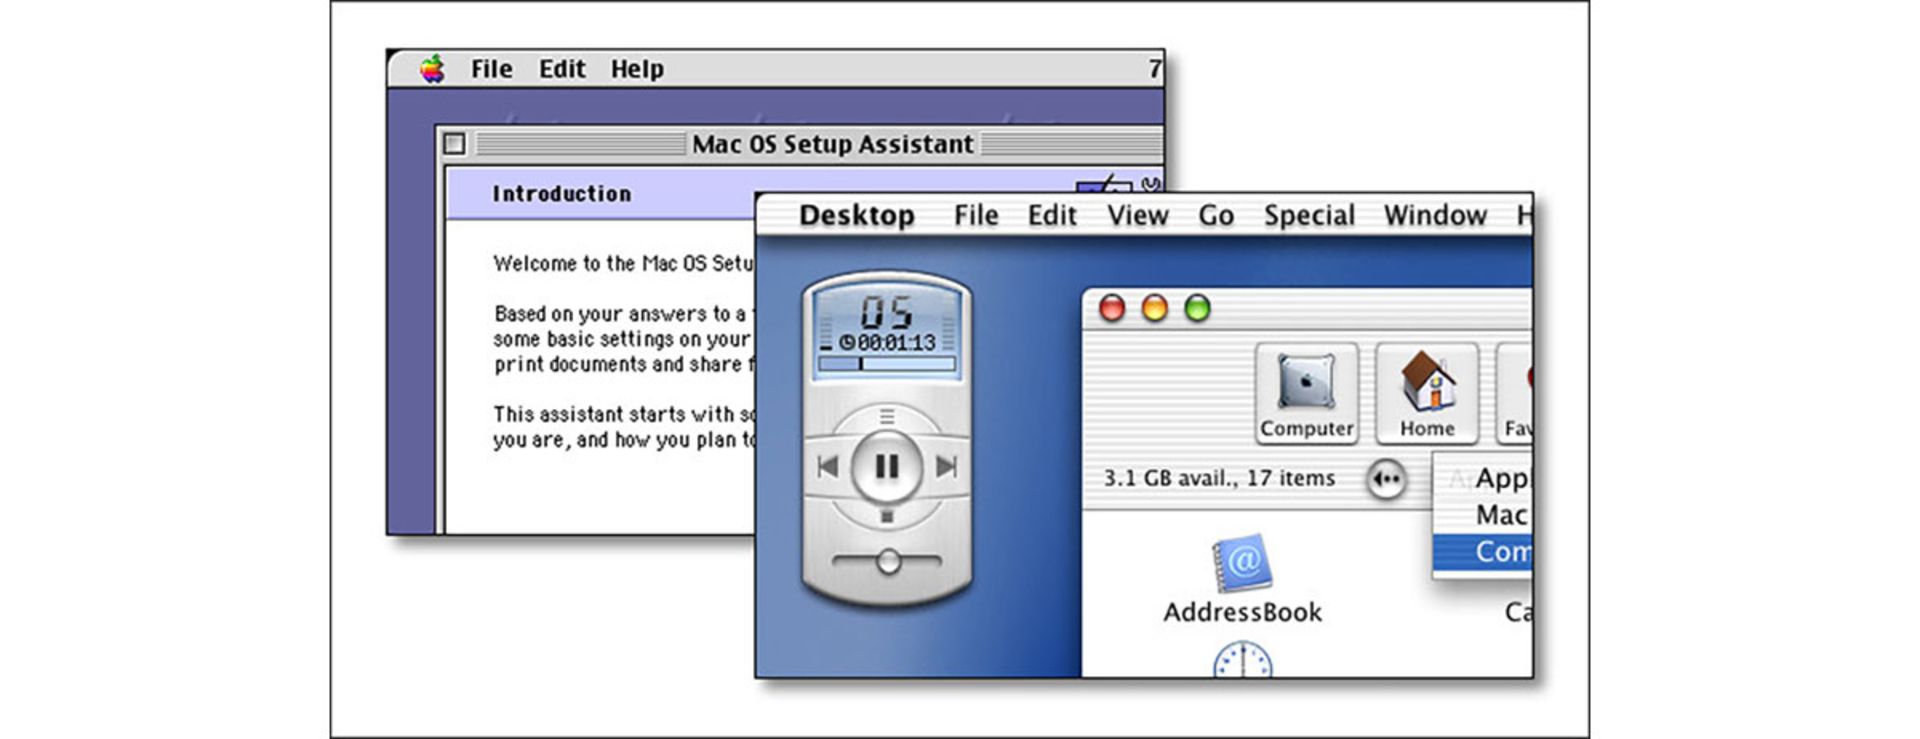 مرجع متخصصين ايران رابط متخصصي Aqua در Mac OS X Public Beta